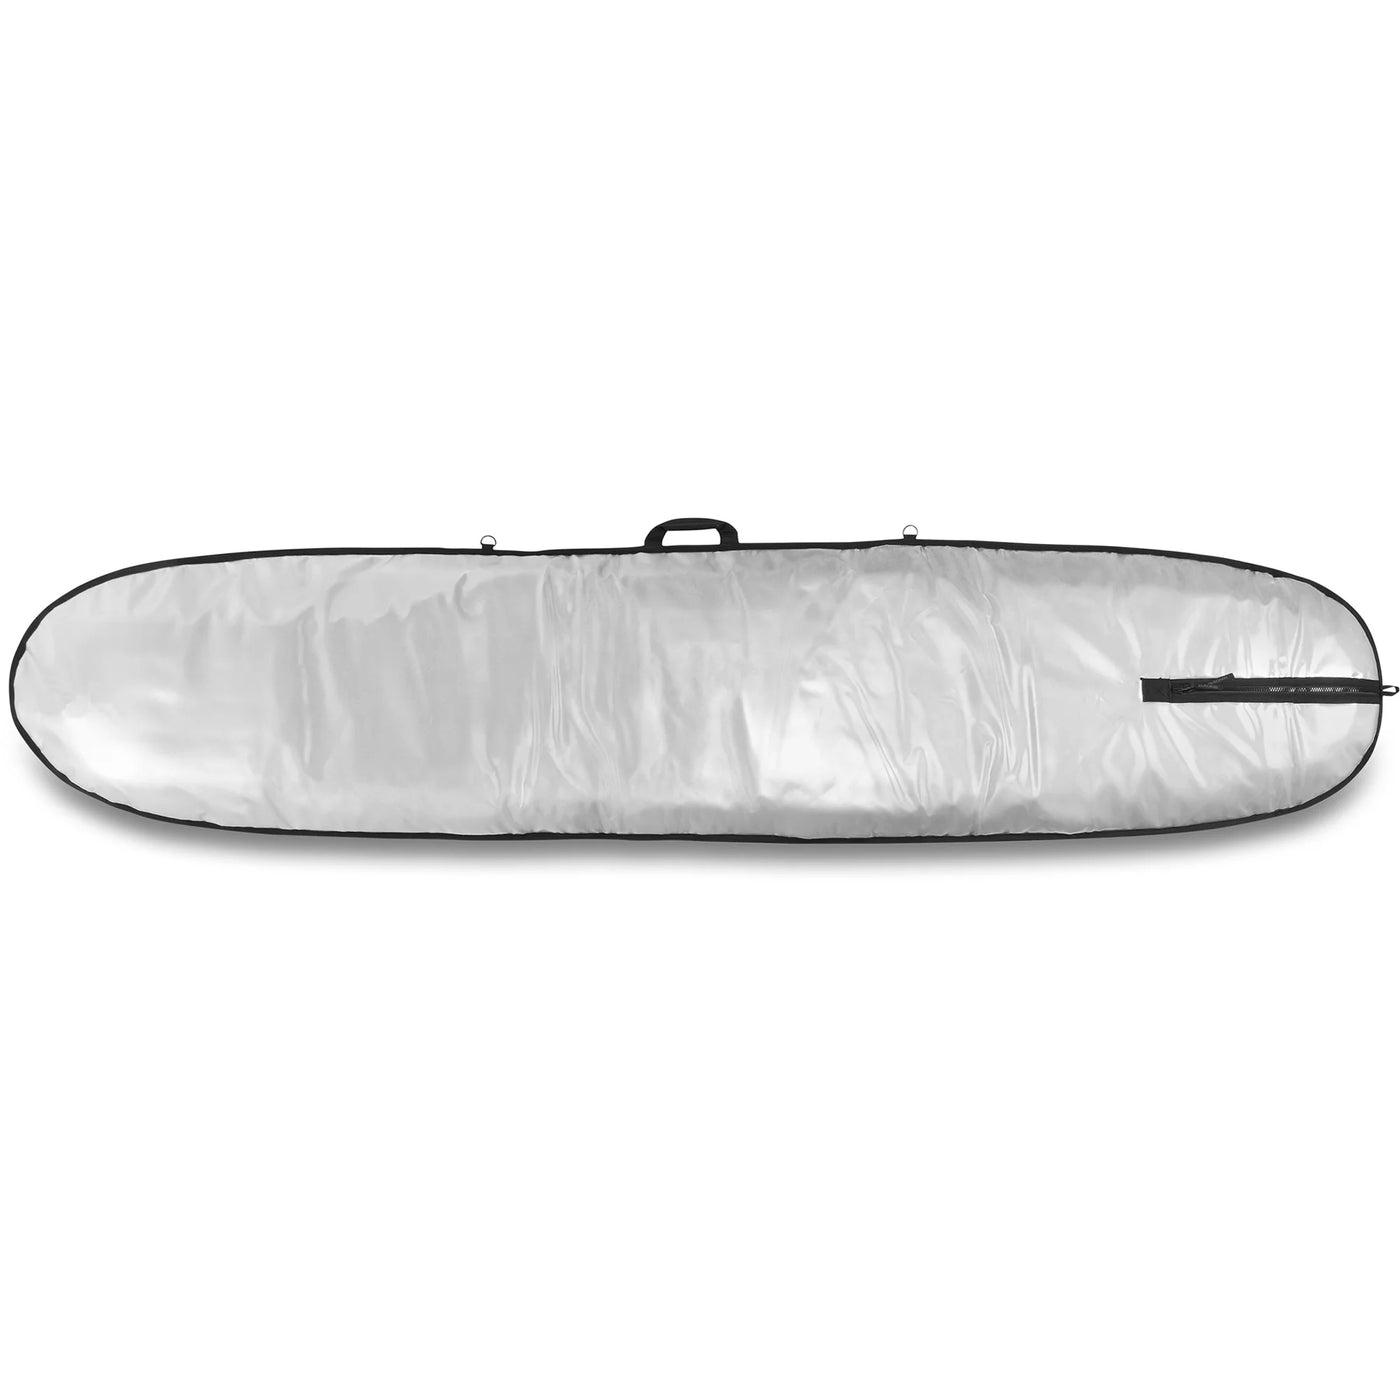 Da Kine 9'6" Mission Surfboard Bag - Noserider